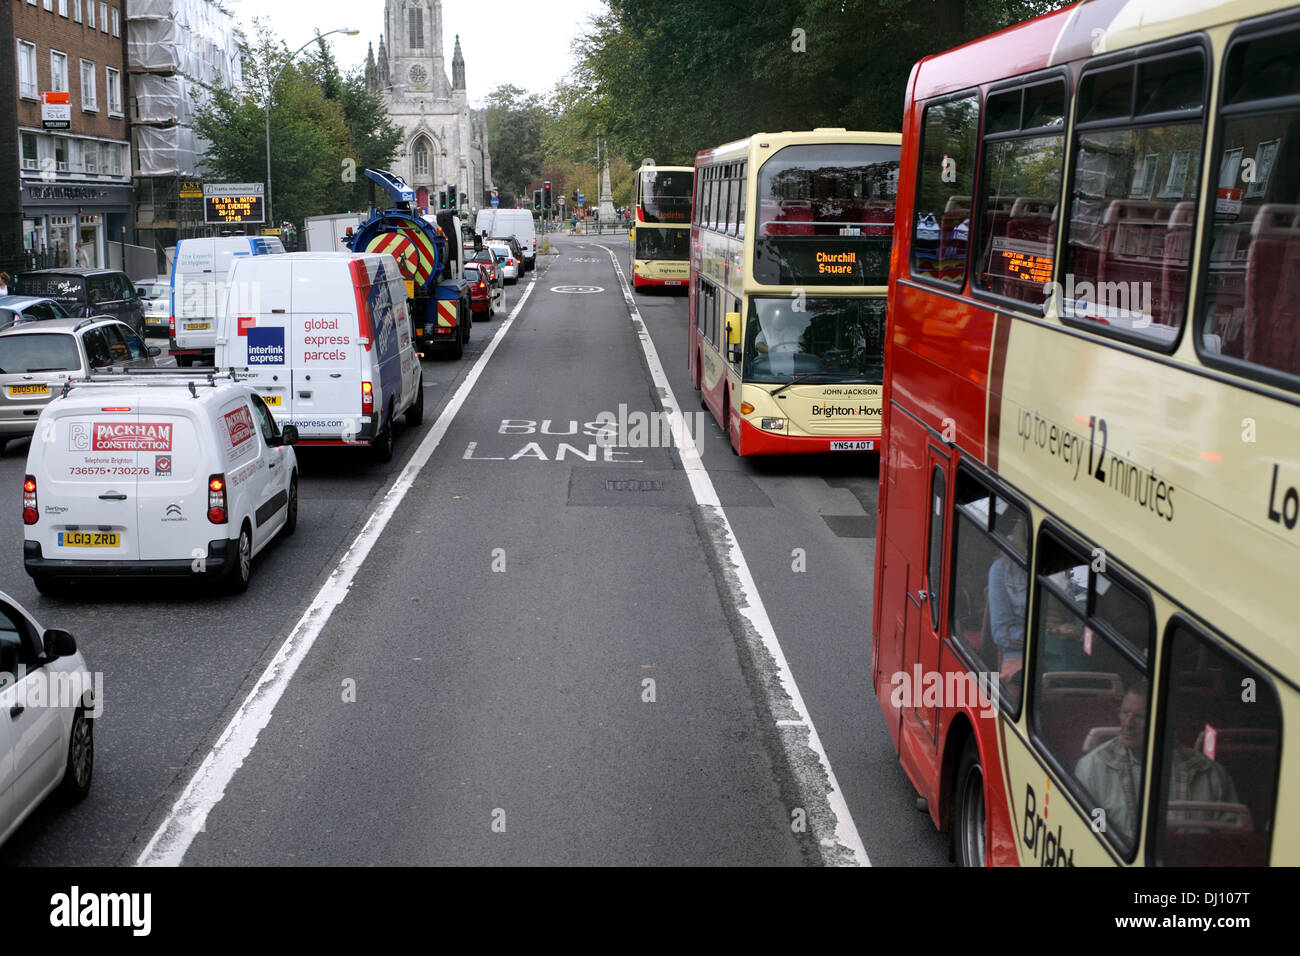 Busse auf einer Strecke von zwei-Wege-bus Lane, Gloucester Place, Brighton. Stockfoto